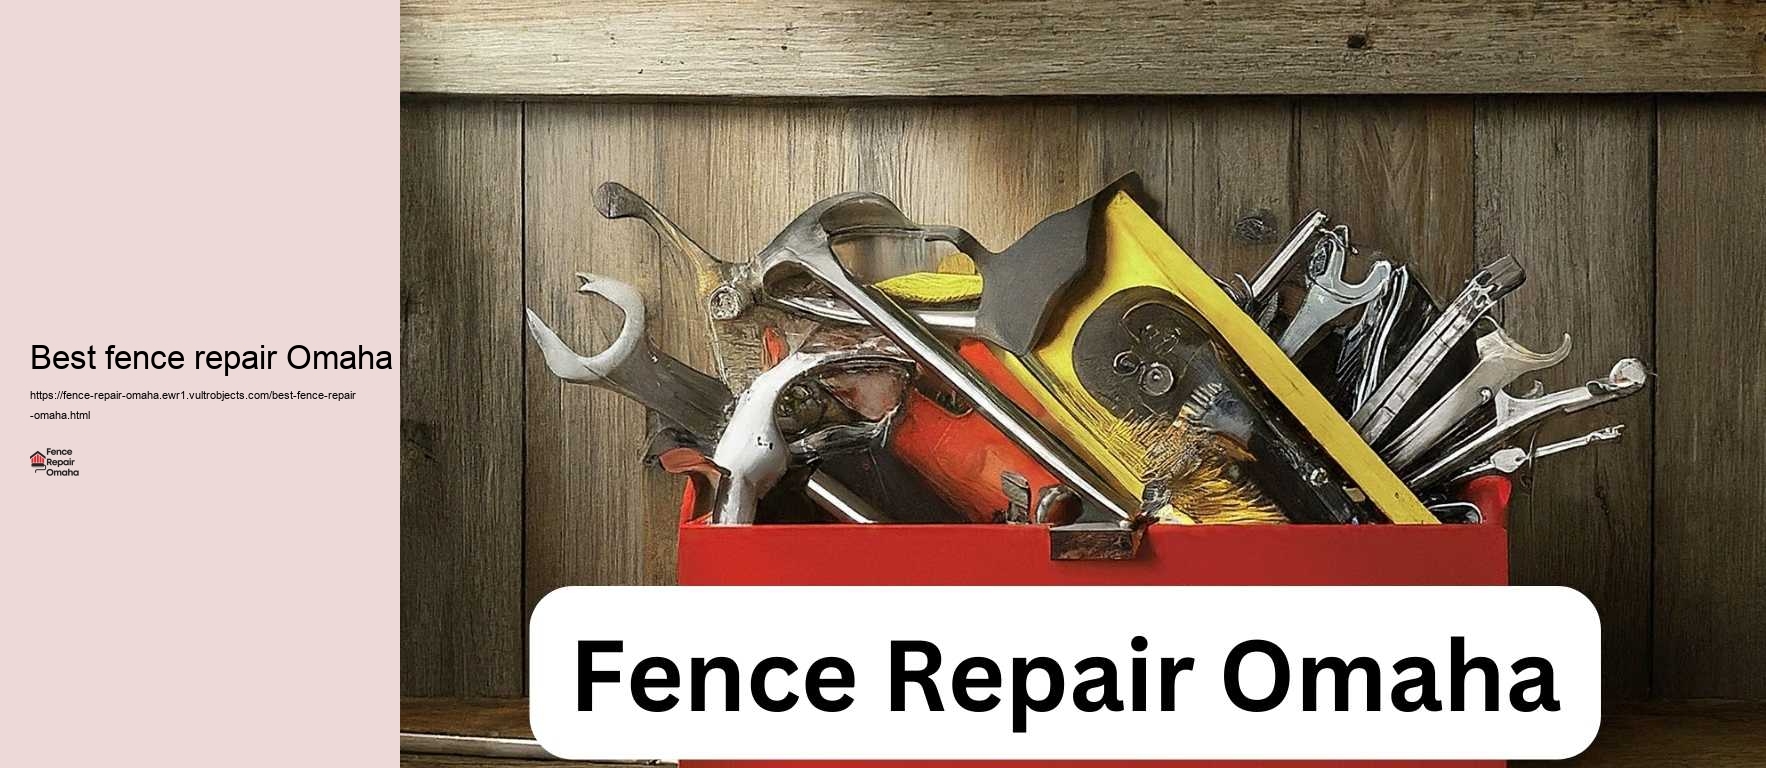 Best fence repair Omaha